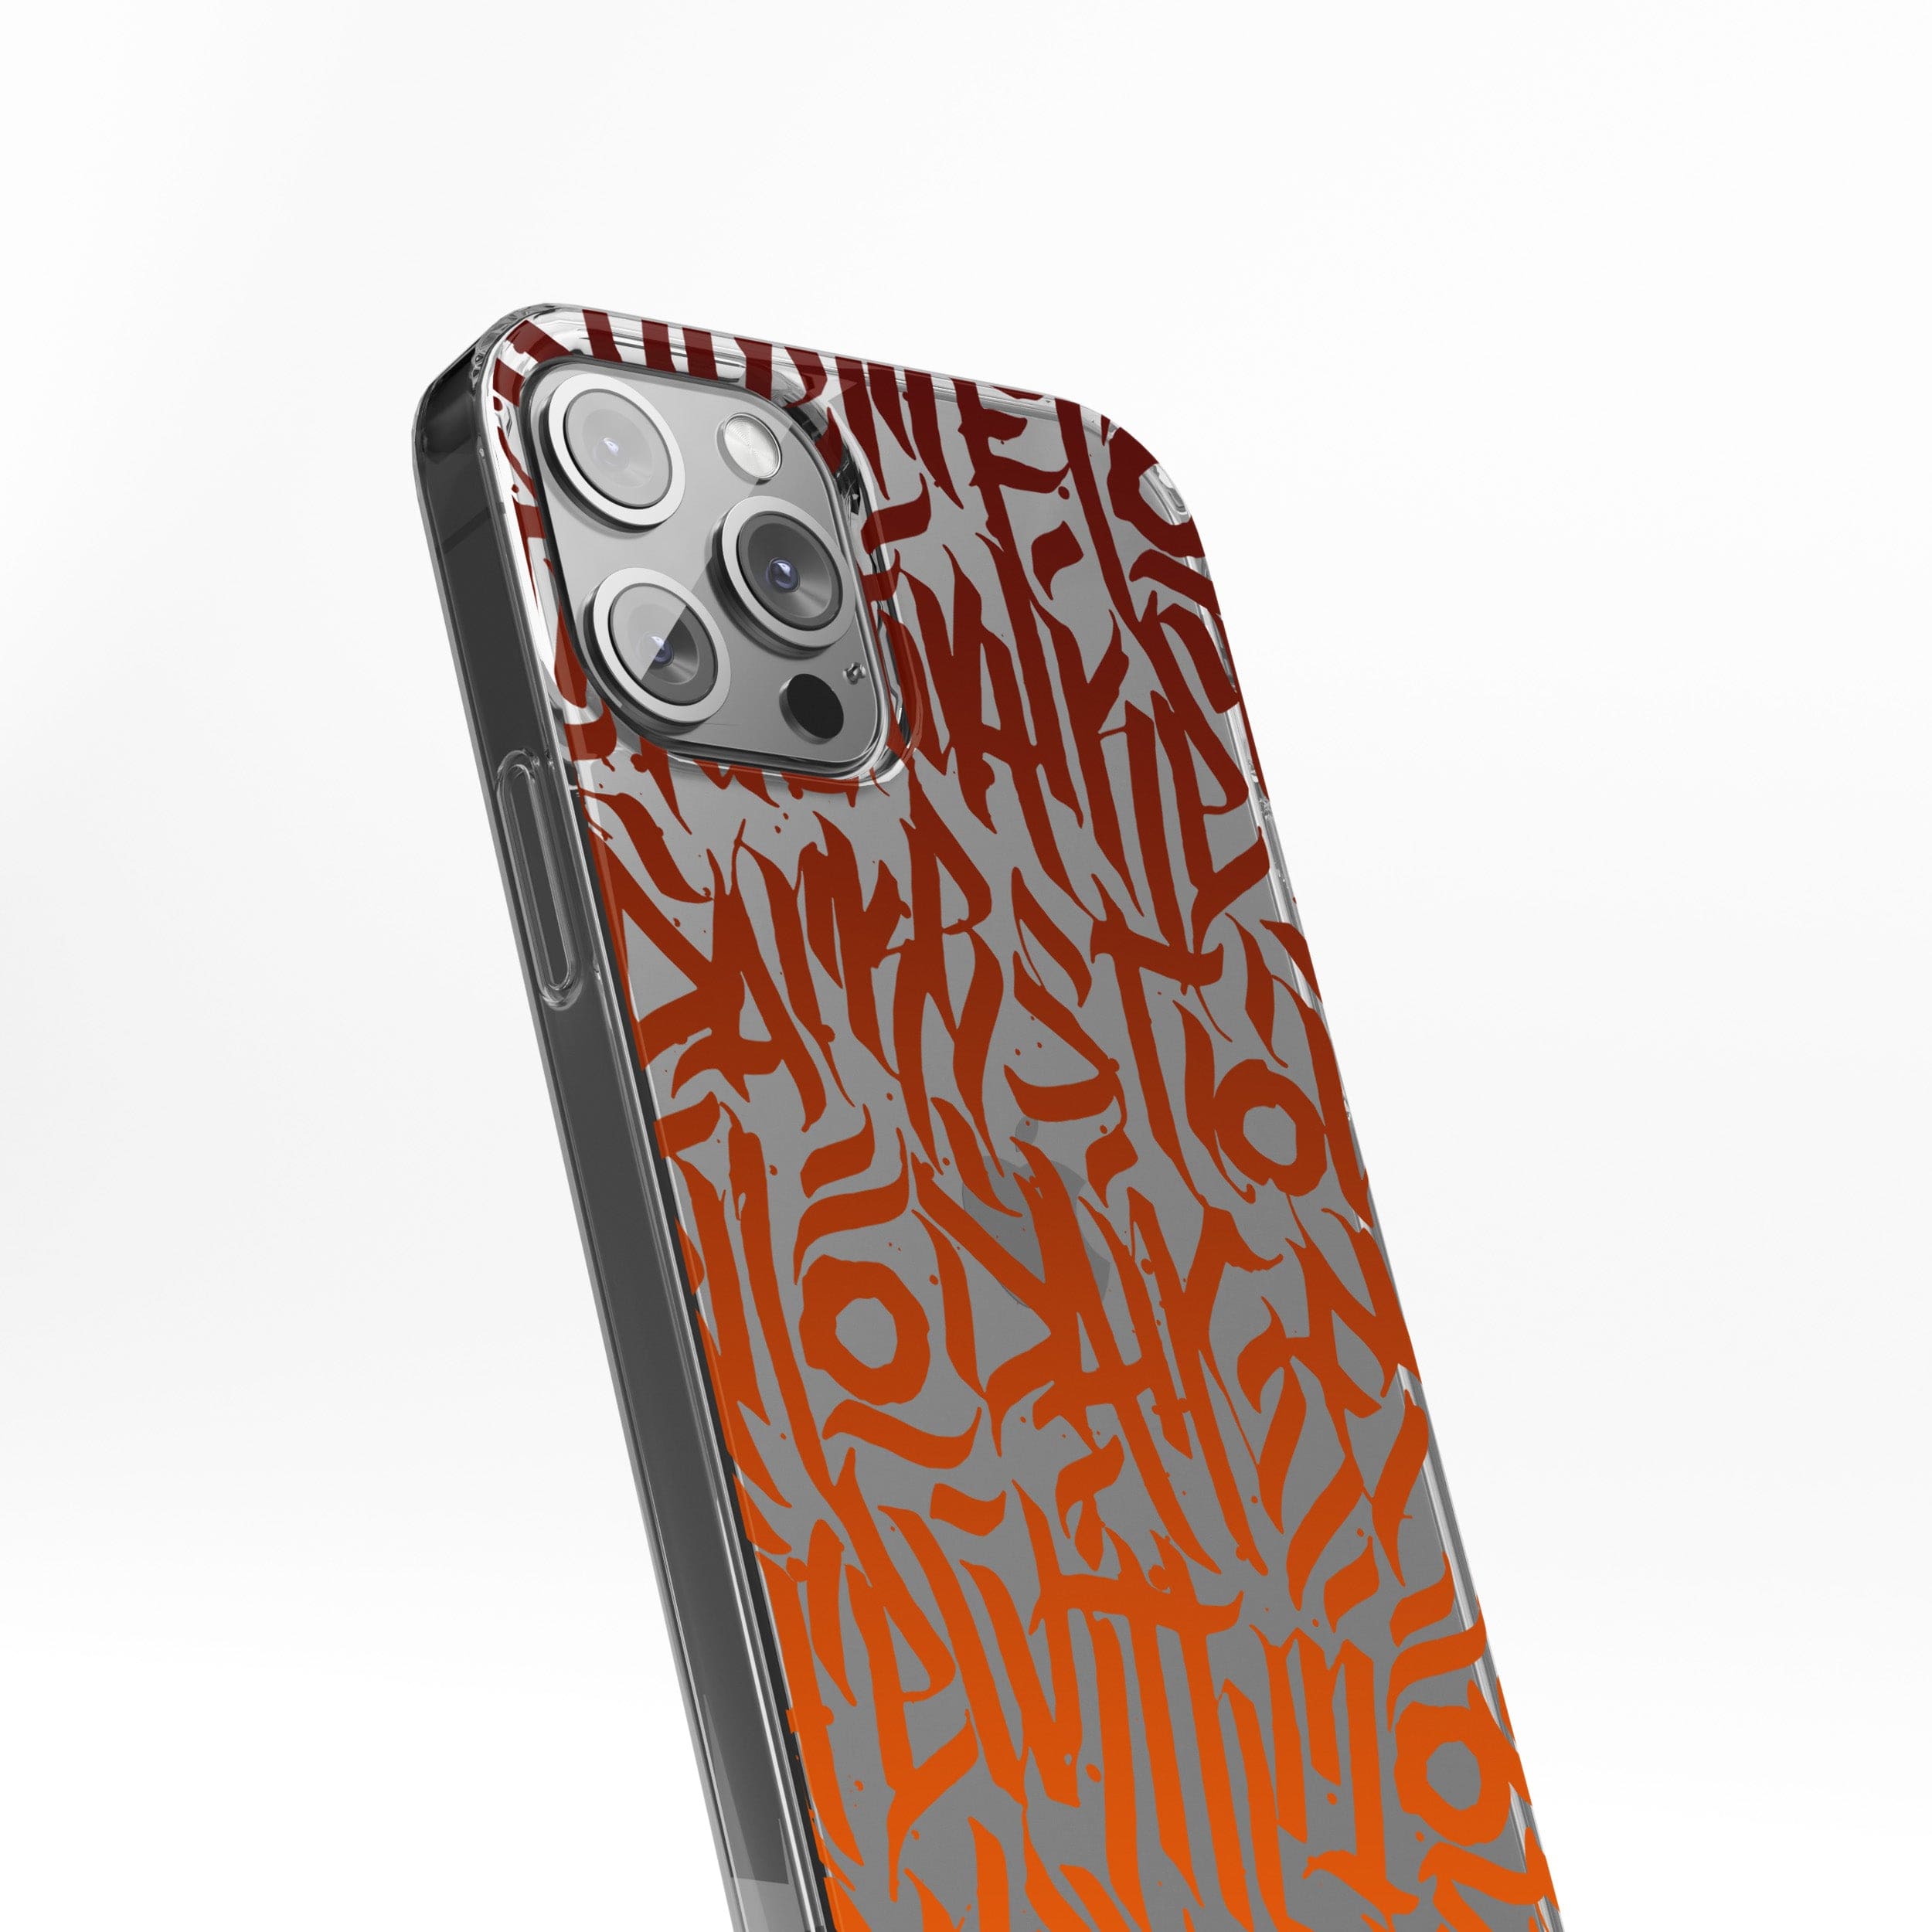 Transparent silicone case "Orange graffiti"